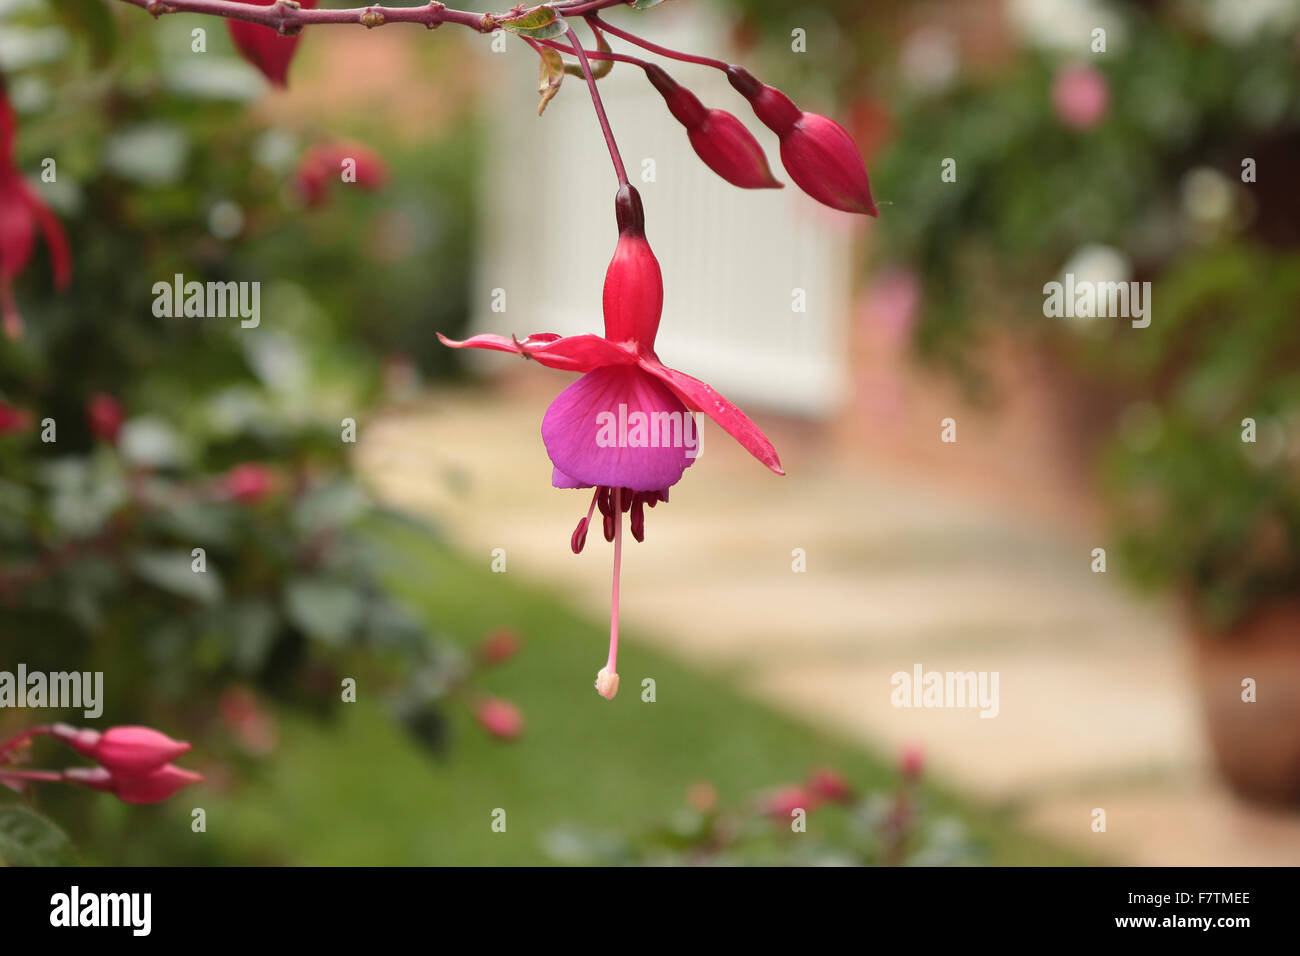 Hermoso leer y rosa jingle bell en un jardín. Foto de stock